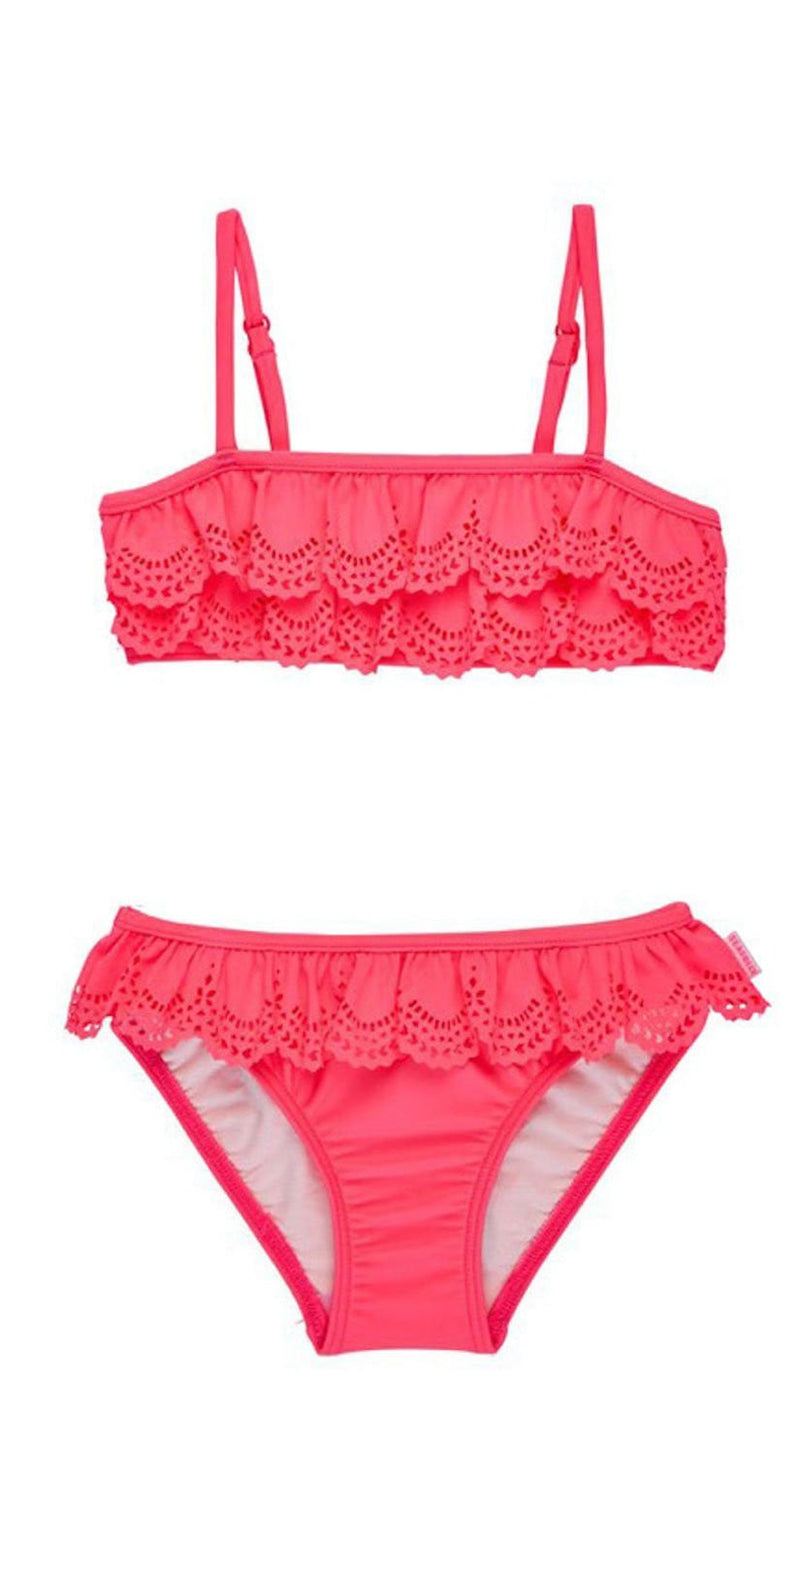 Seafolly Girls Jewel Cove Ruffle Bikini Set in Pink Soda 26116T: